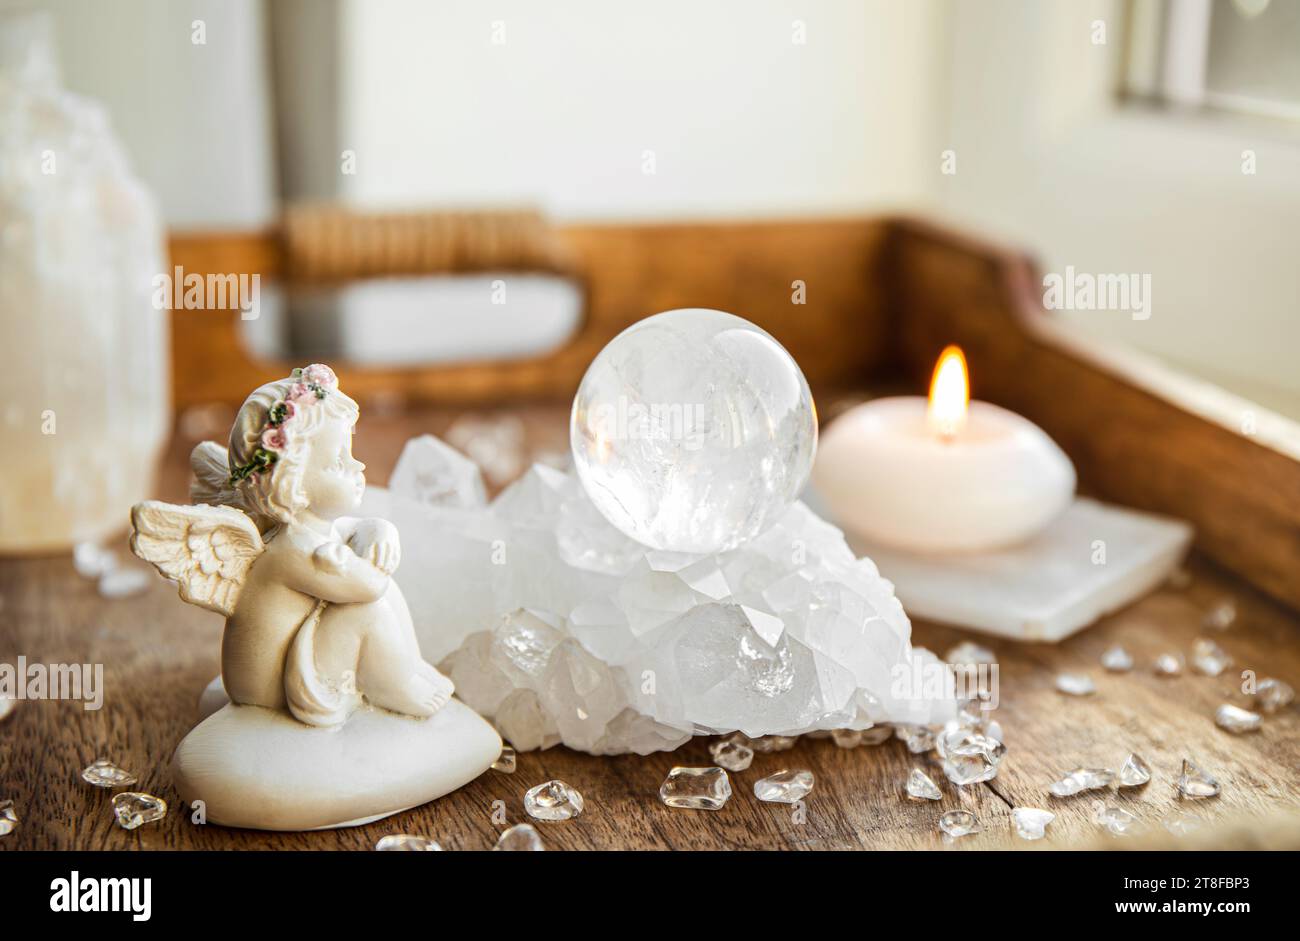 Spirituelles Engel-Botschaftskonzept. Kleine süße Engelsfigur sitzt drinnen neben Kristall-Edelsteinkugel. Stockfoto